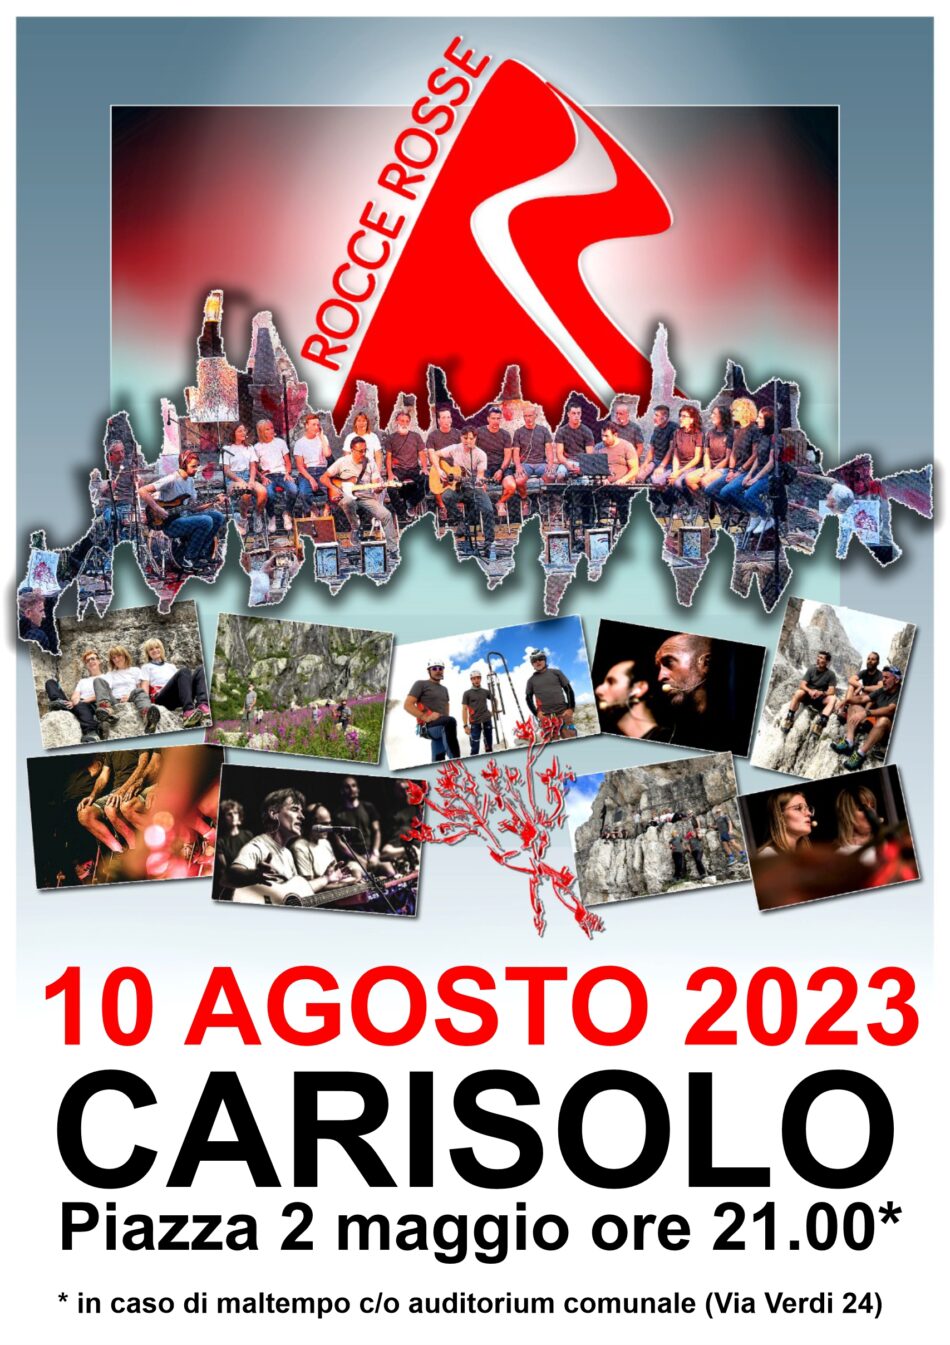 Carisolo – Concerto coro musicale ROCCE ROSSE ed evento RAINBOW COCKTAIL